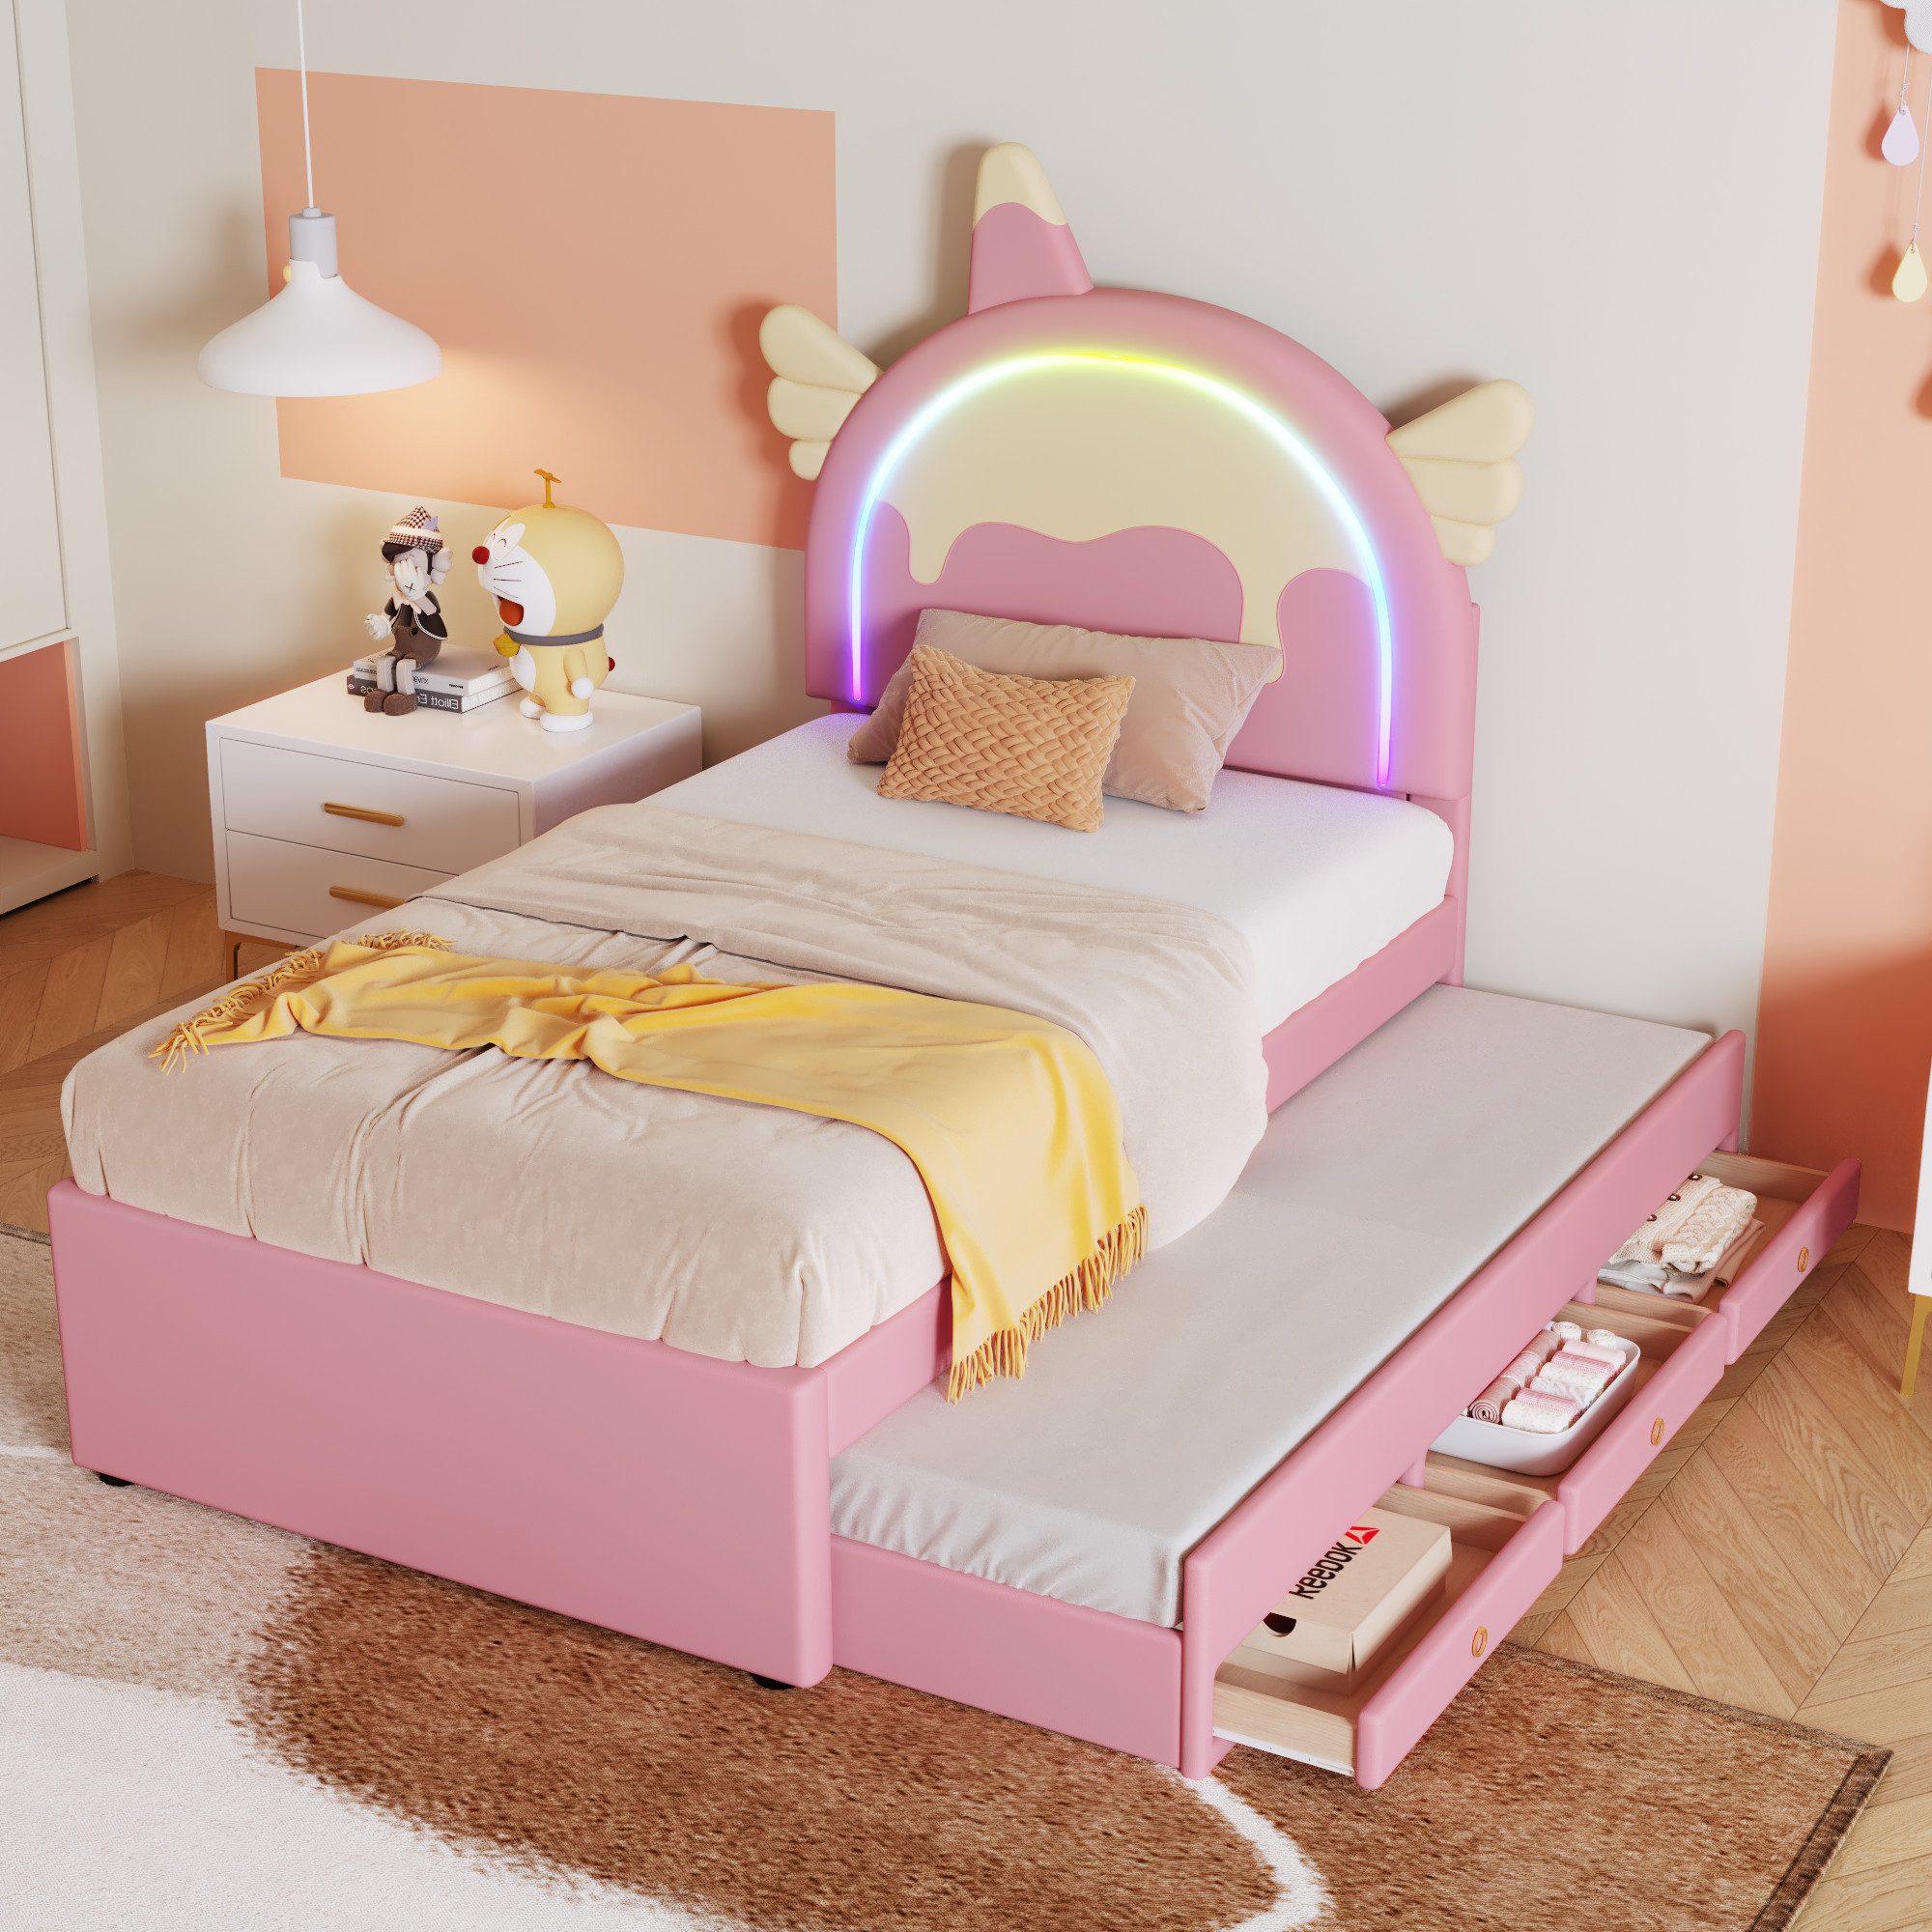 NMonet Polsterbett Kinderbett Stauraumbett( LED-Beleuchtung) (Geeignet für Jungen und Mädchen), Mit ausziehbarem Bett, 3 Schubladen, Einhornform, 90x200cm